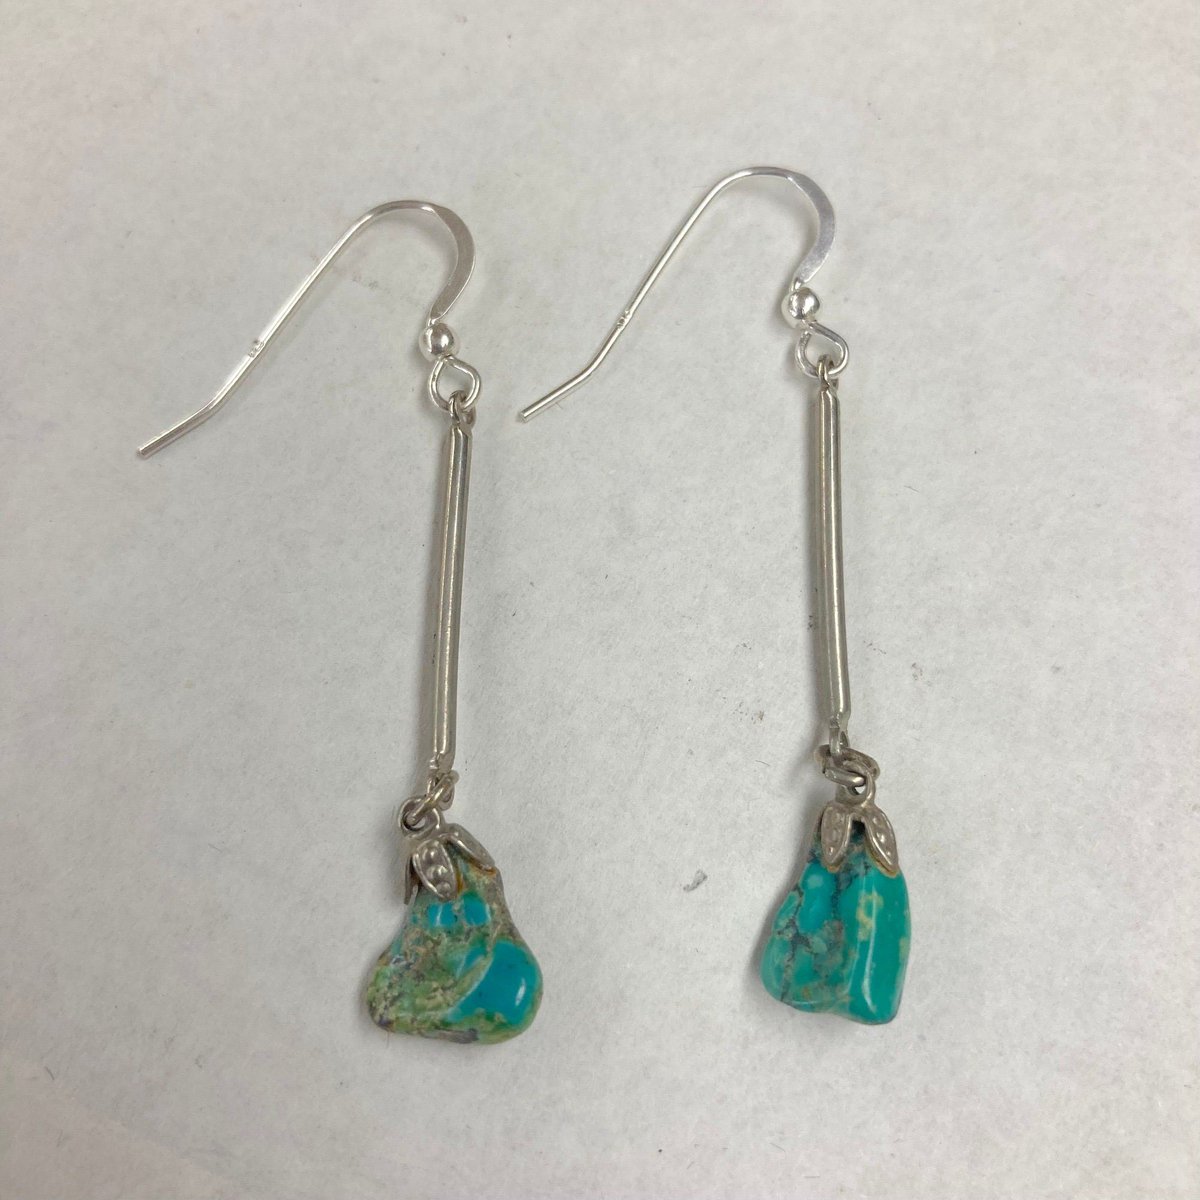 Southwestern Native American Turquoise Drop Dangle Fish Hook Earrings Vintage #earwire #silver #turquoise #southwestern #earrings #dropdangle etsy.me/3k2y7tJ